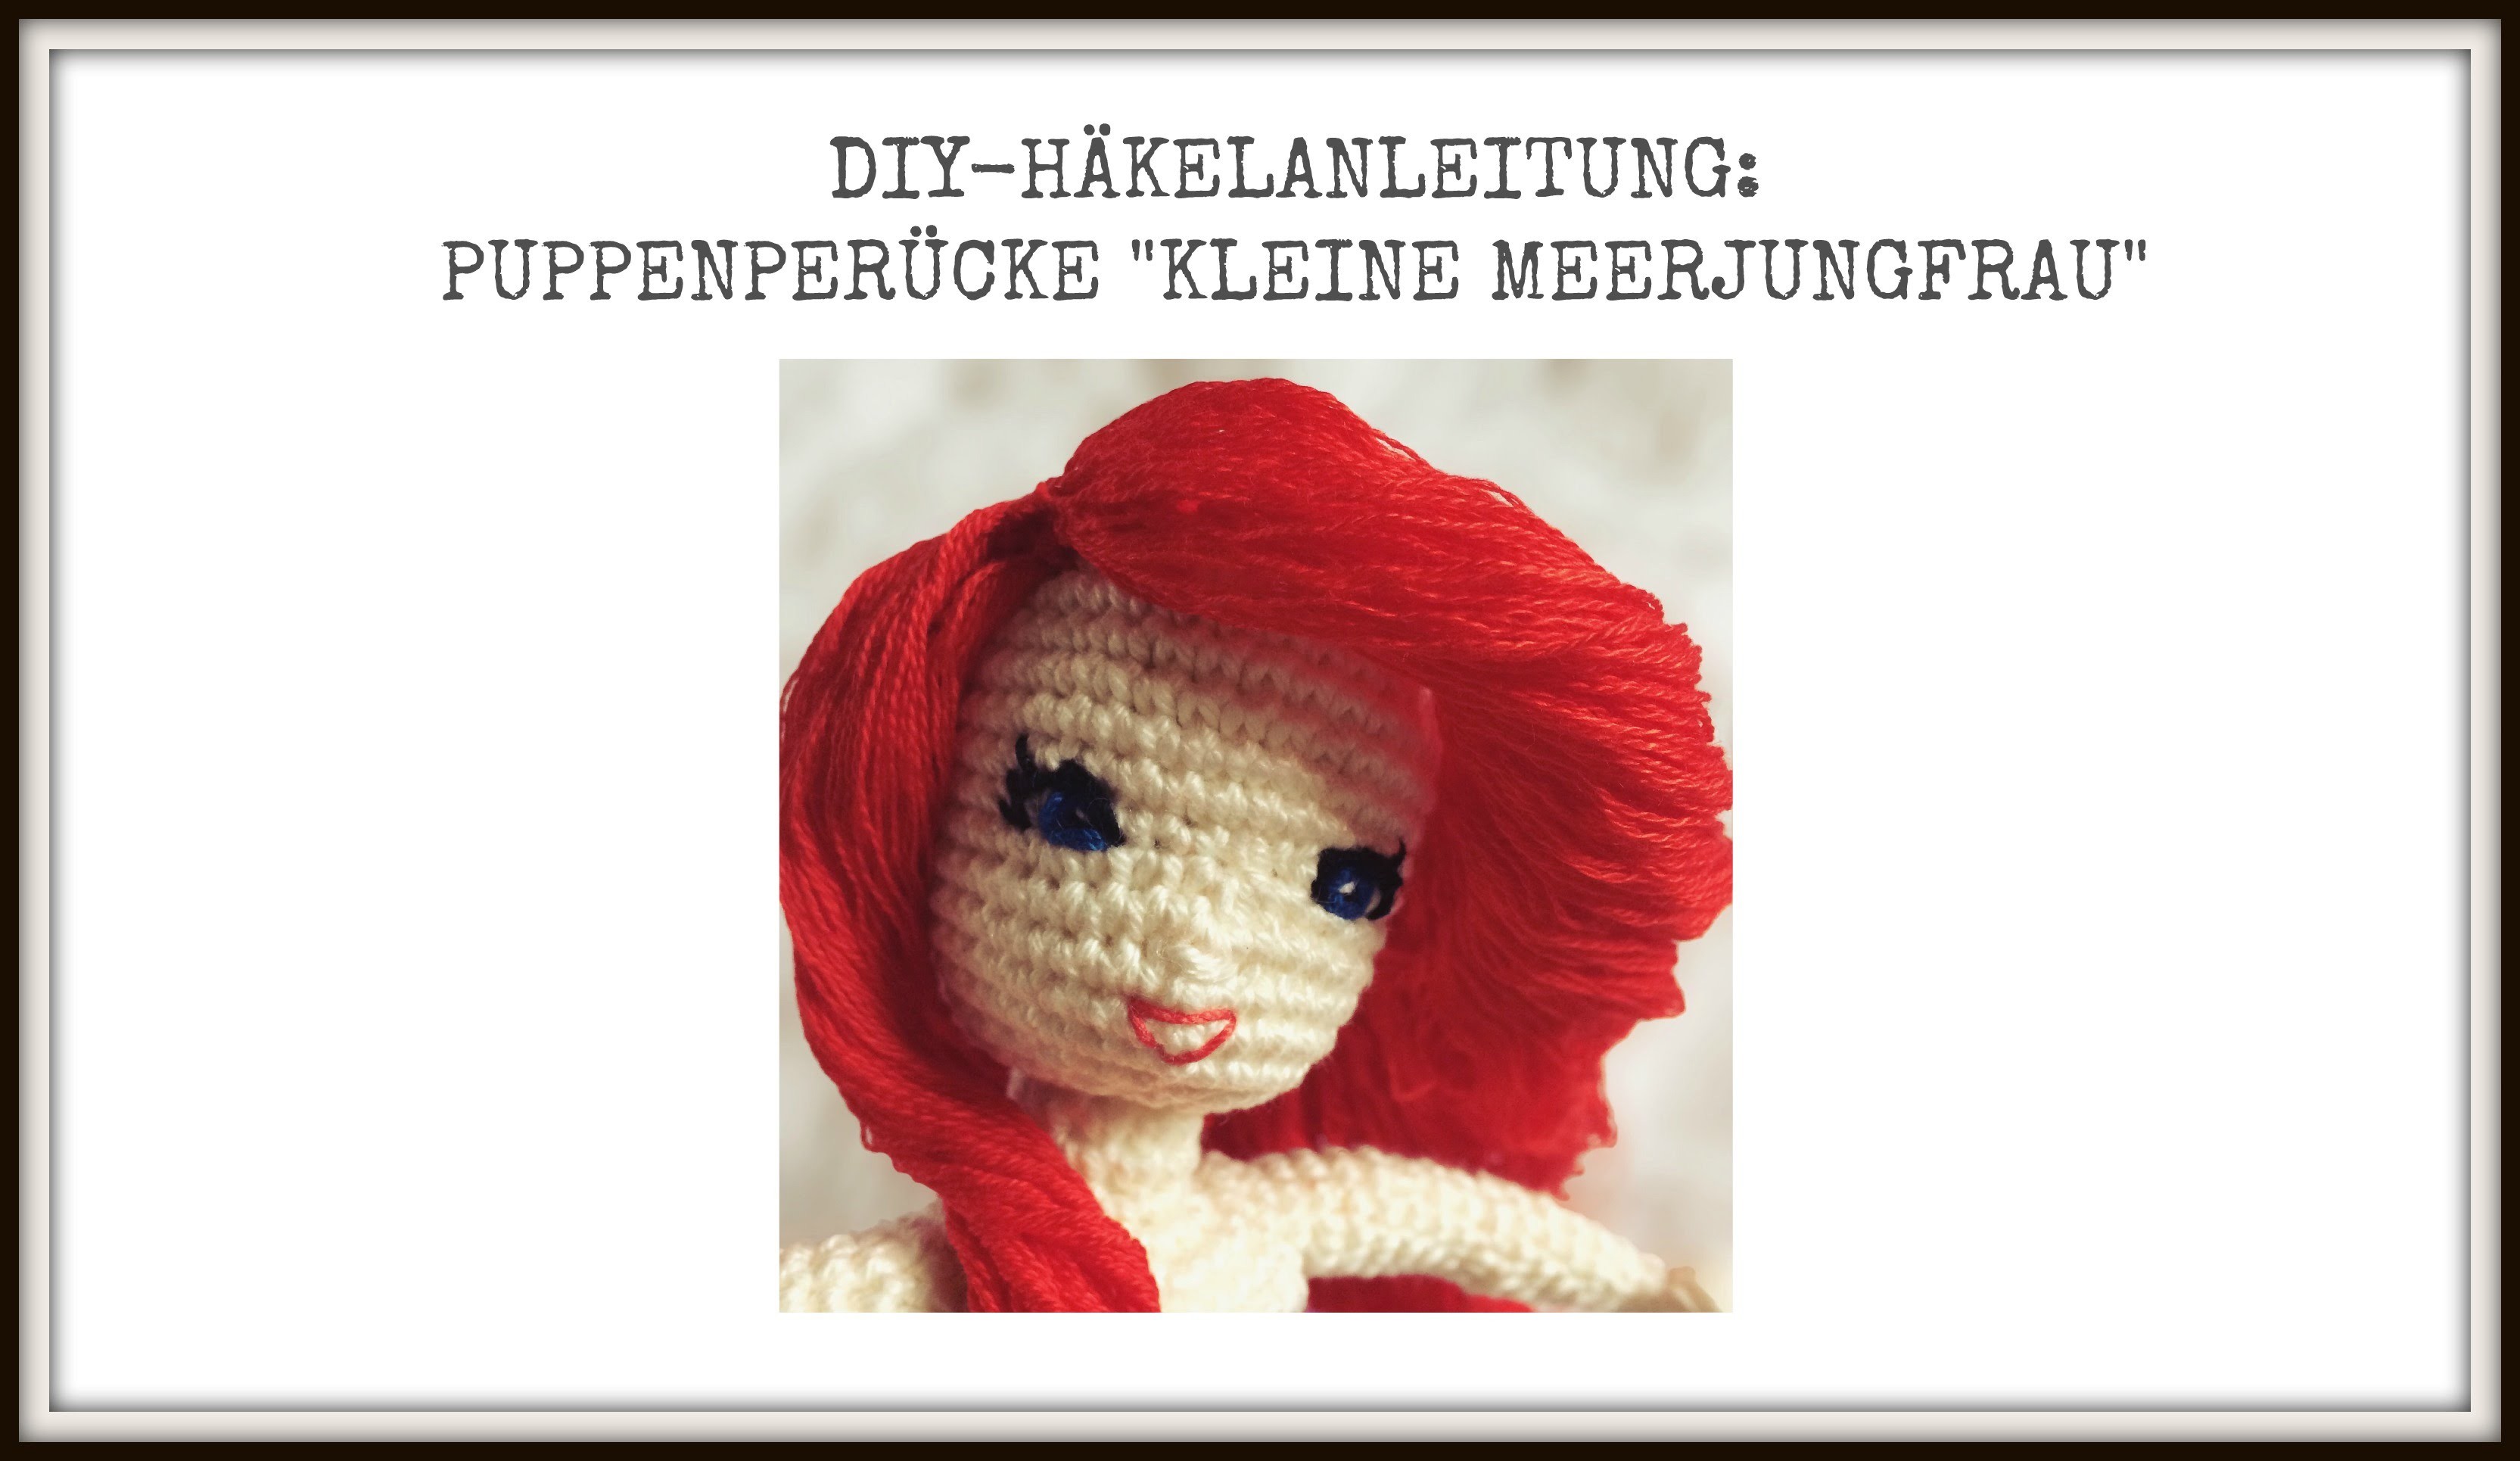 DIY-Häkelanleitung: Puppenperücke inspiriert von der kleinen Meerjungfrau Arielle